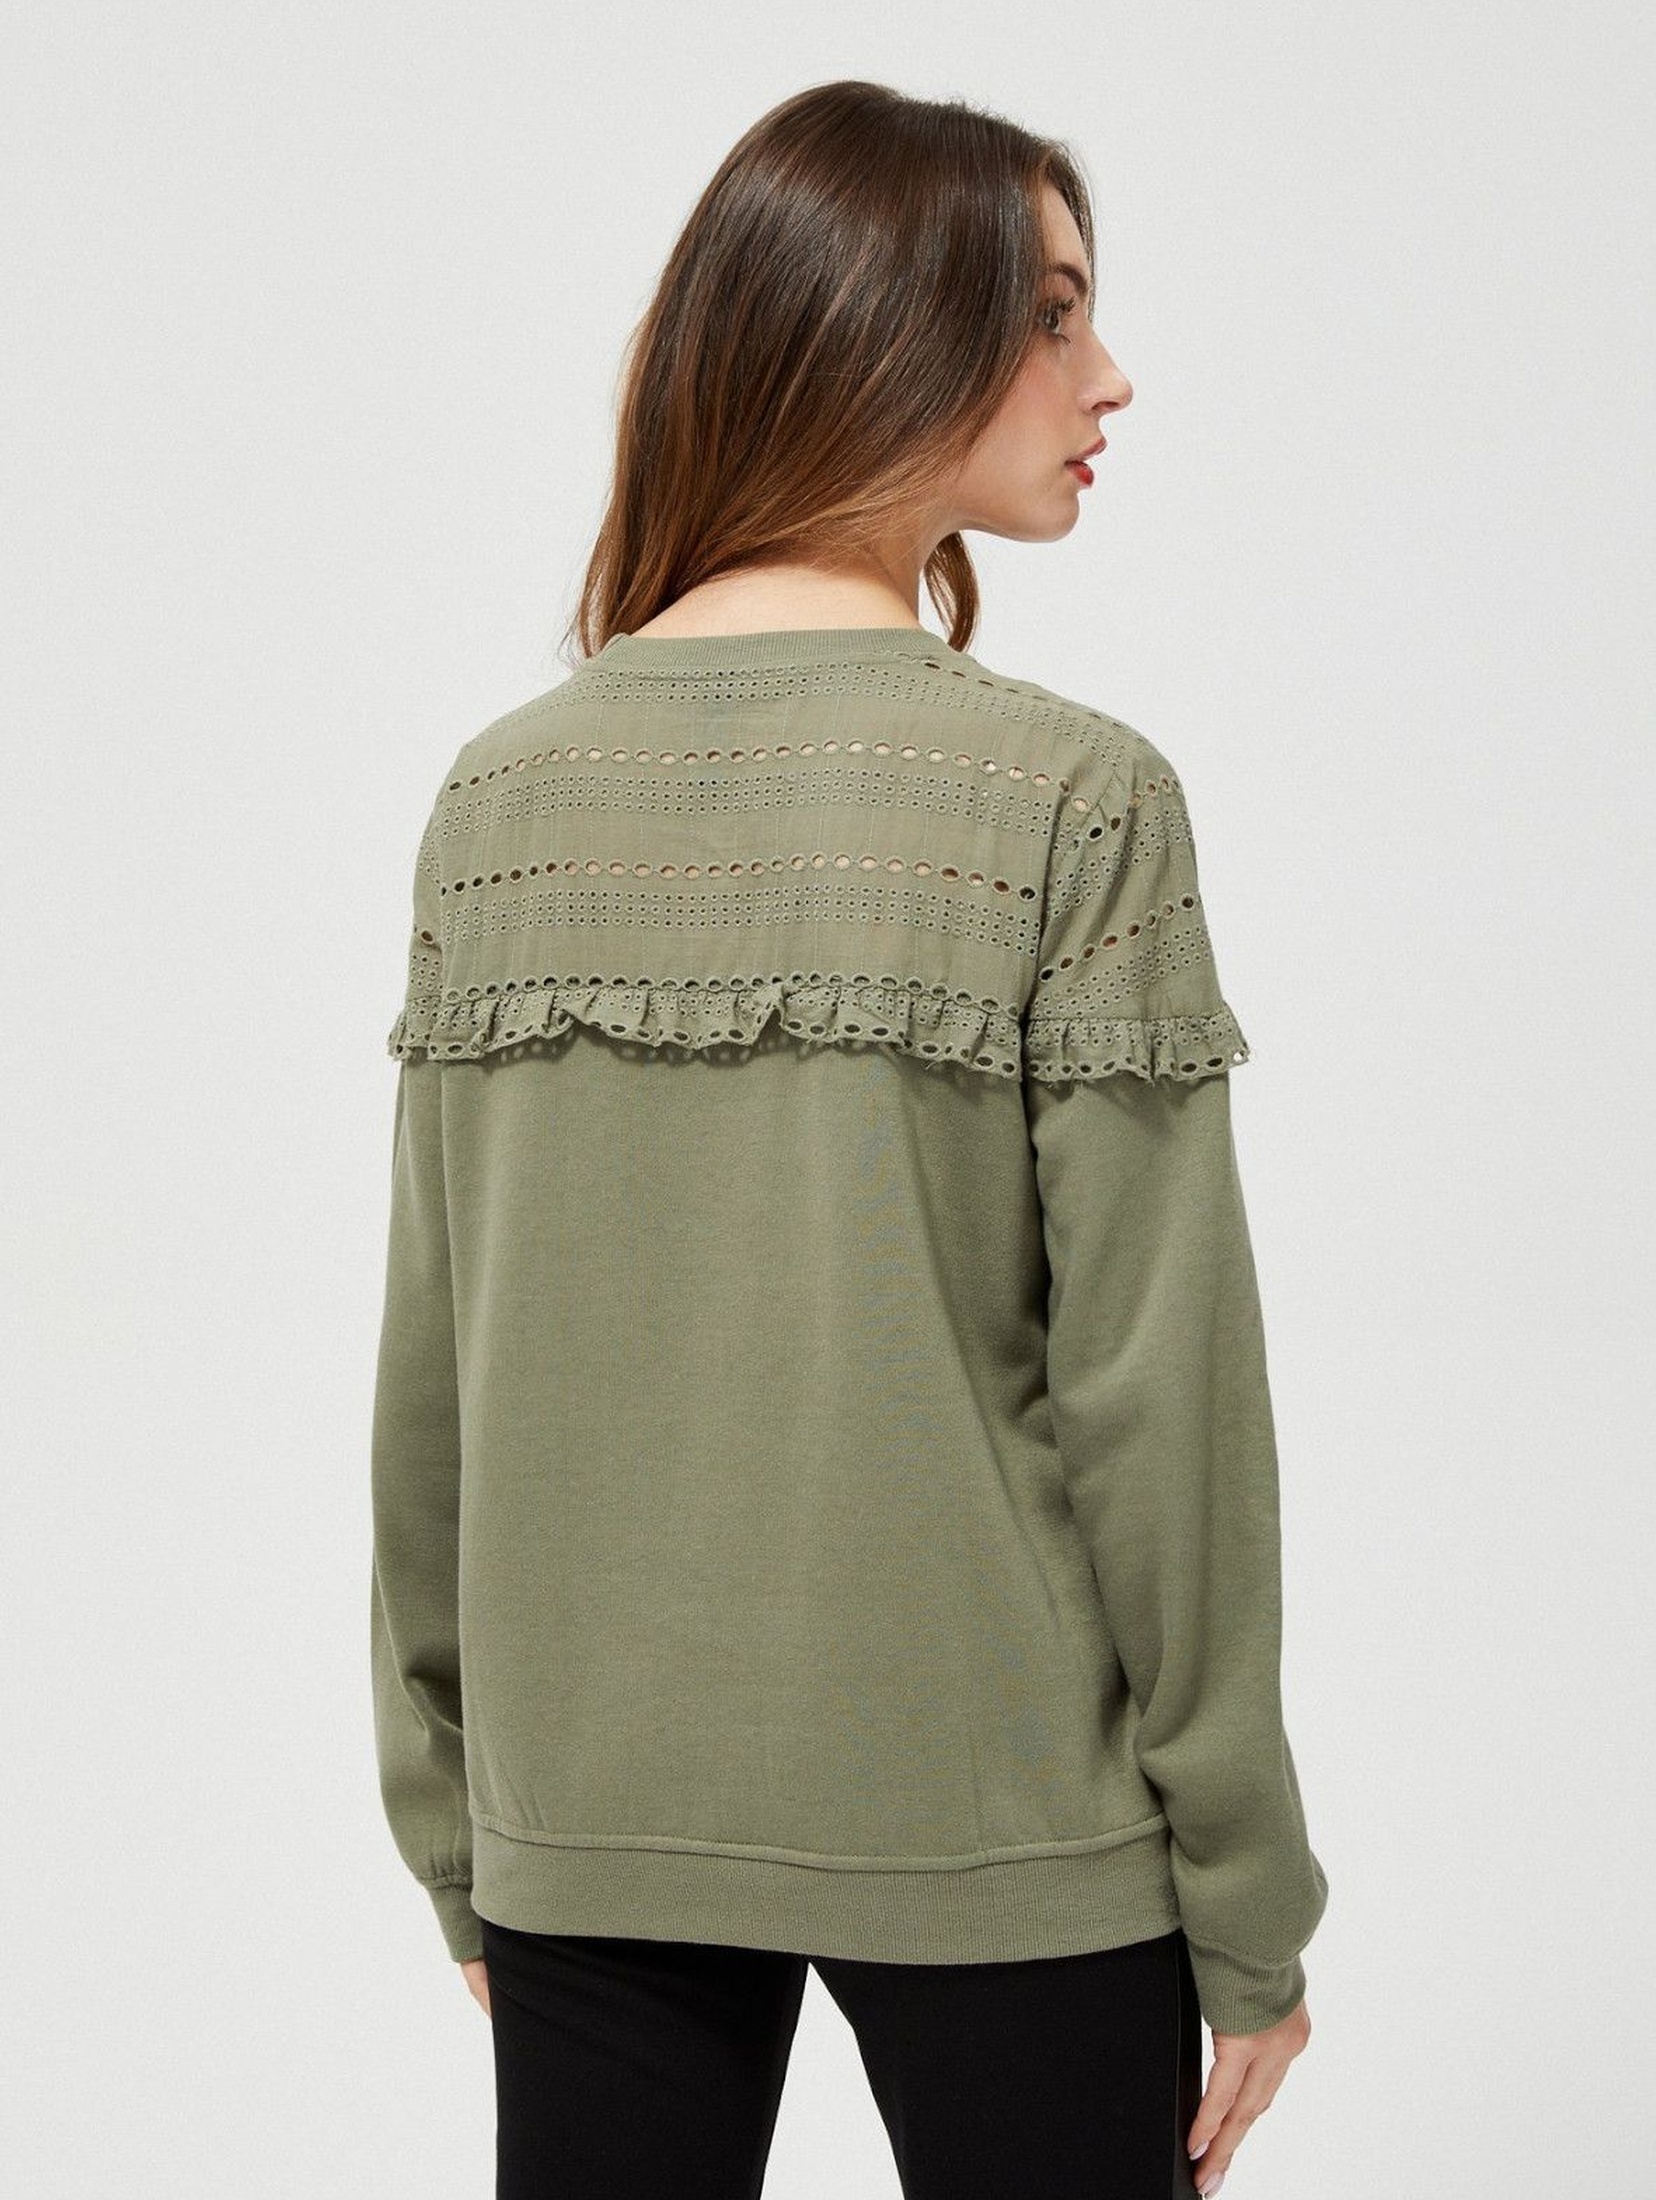 Bluza dresowa damska z ażurowym zdobieniem - zielona